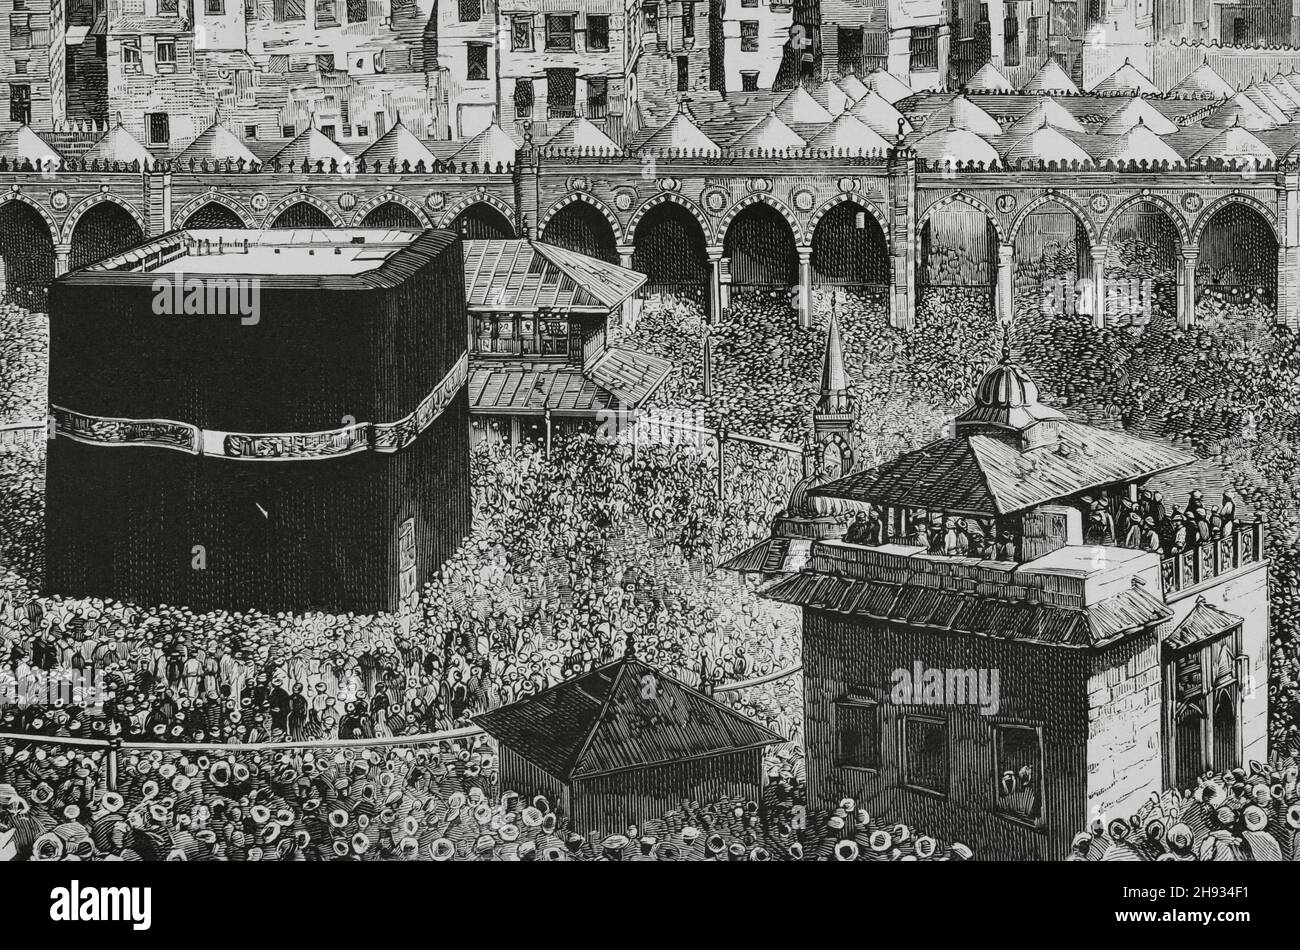 Arabia Saudita, La Meca. En el centro de la mezquita de al-Masjid al-Haram, la Kaaba, que alberga la 'Piedra Negra. Grabado. Detalle. La Ilustración Española y Americana, 1882. Foto de stock